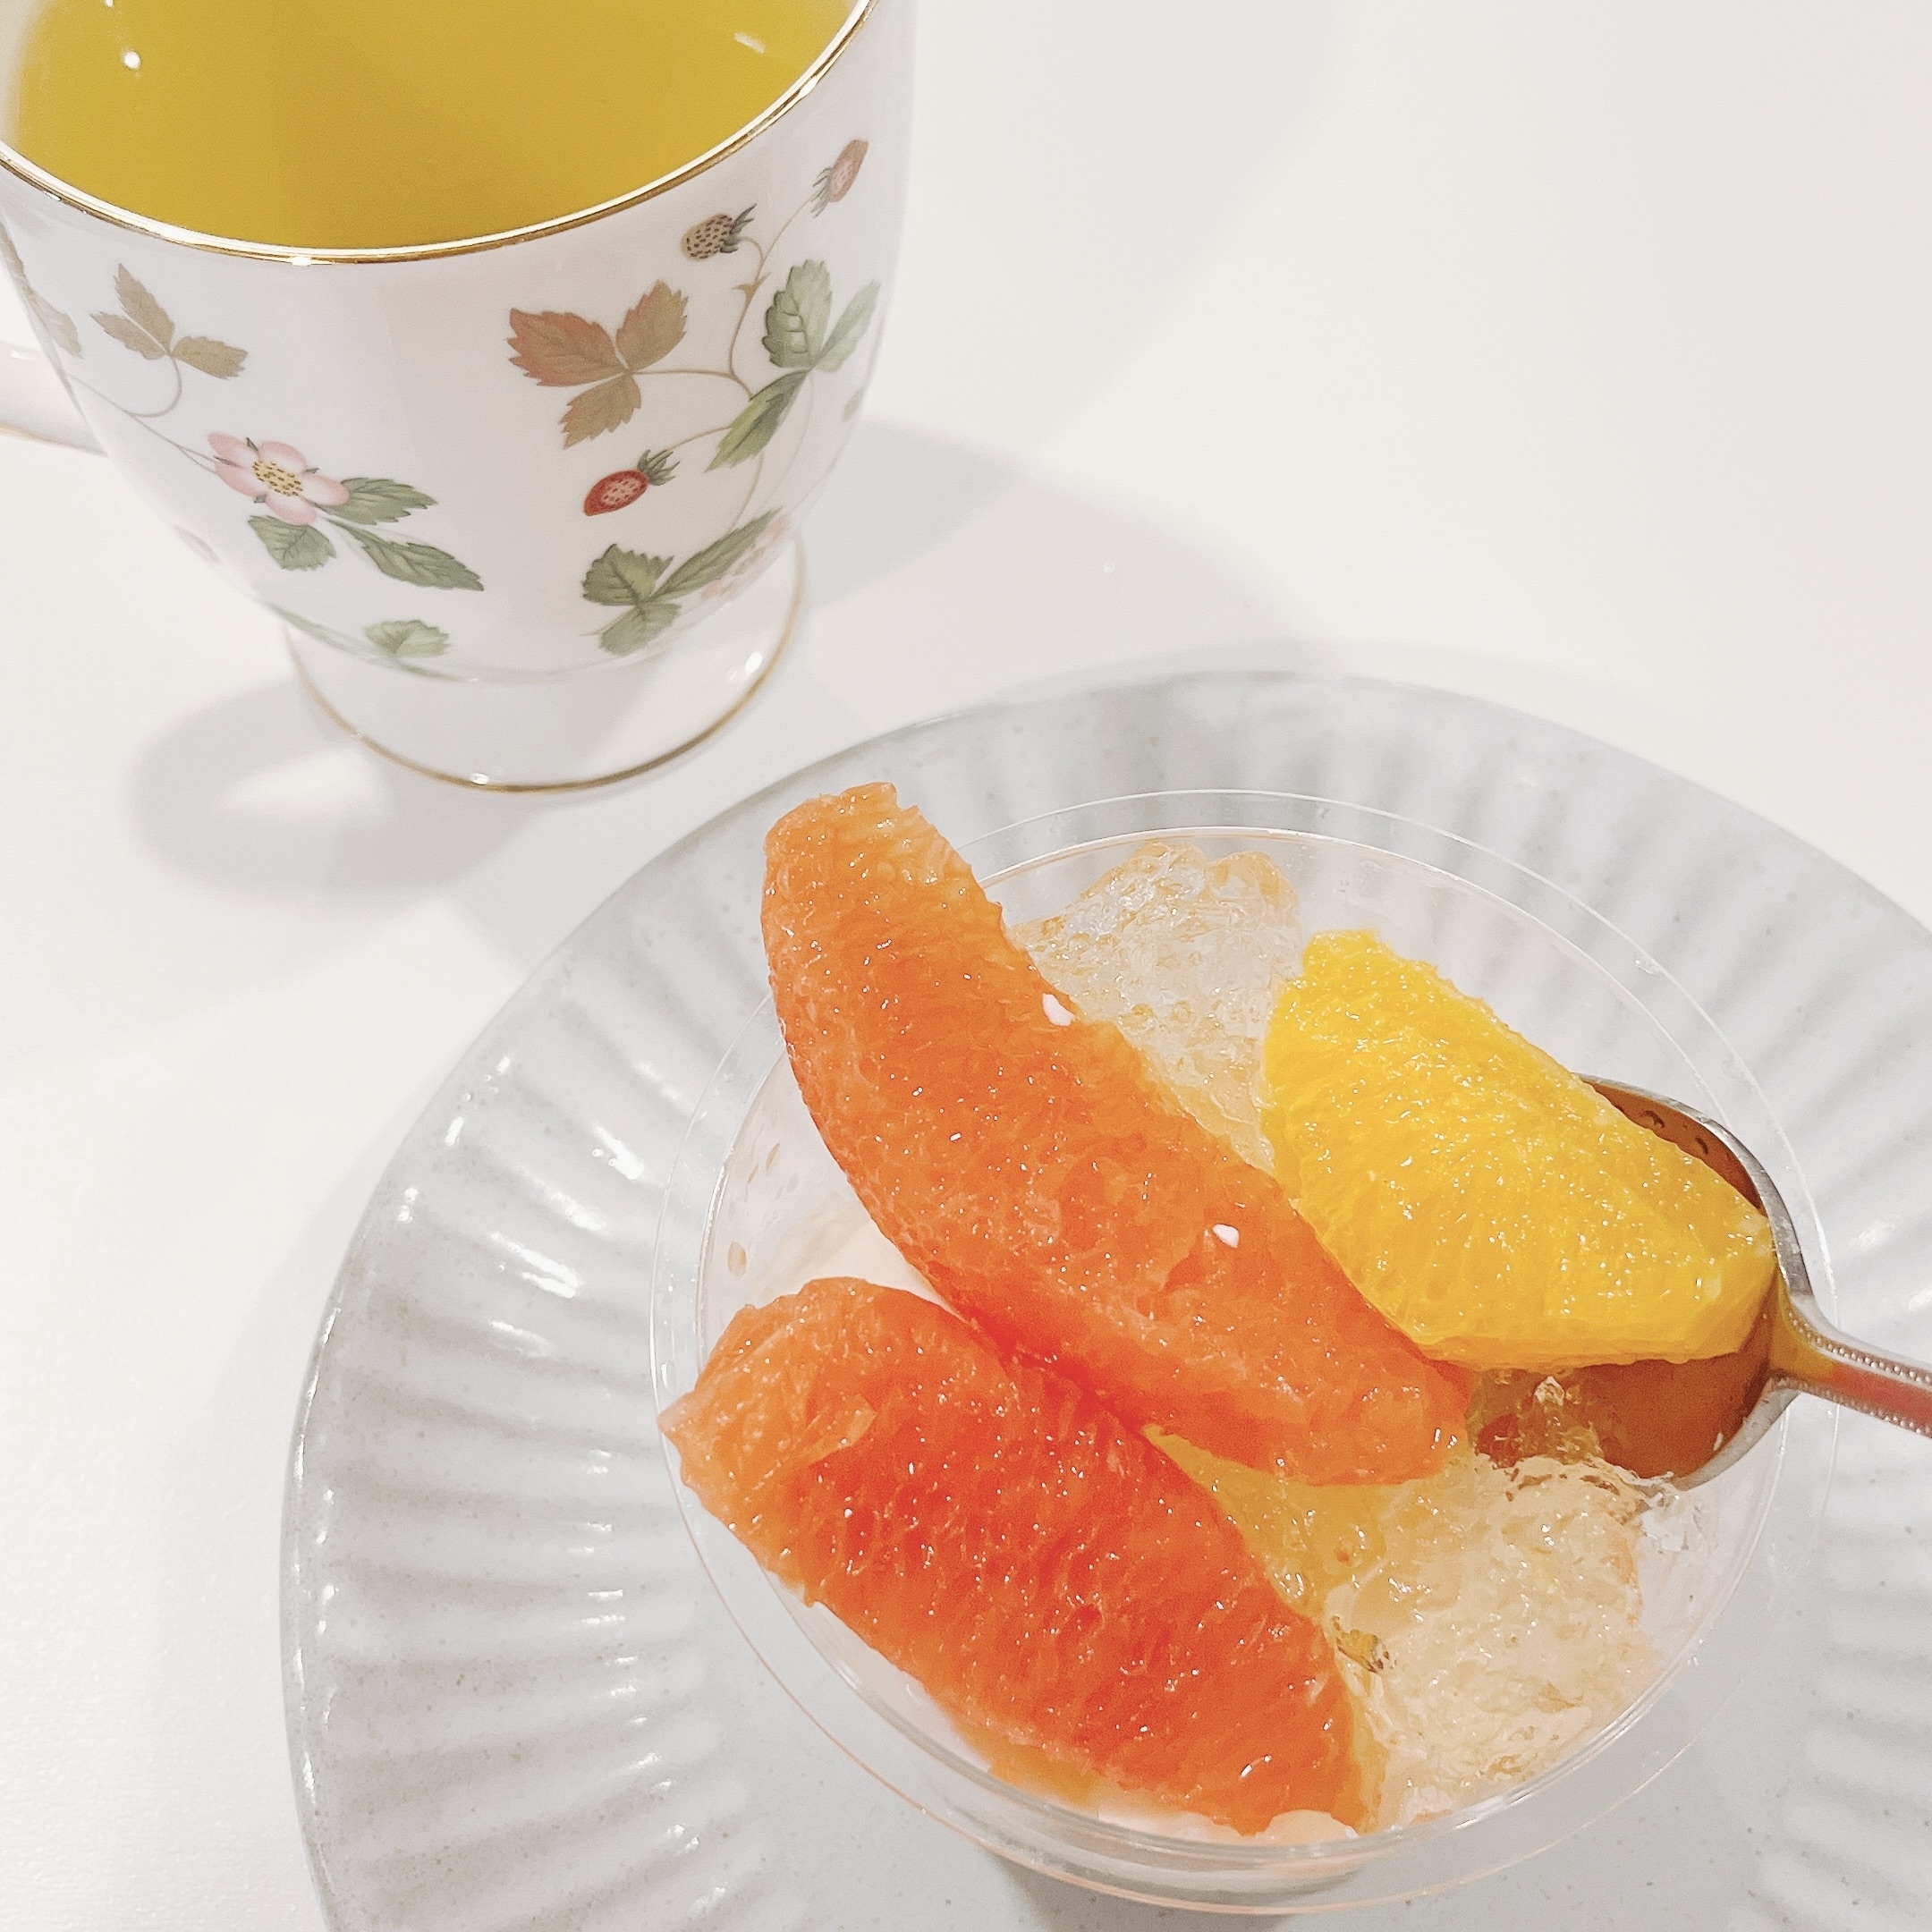 成城石井のオススメの商品「フレッシュ柑橘とメロンの杏仁豆腐」